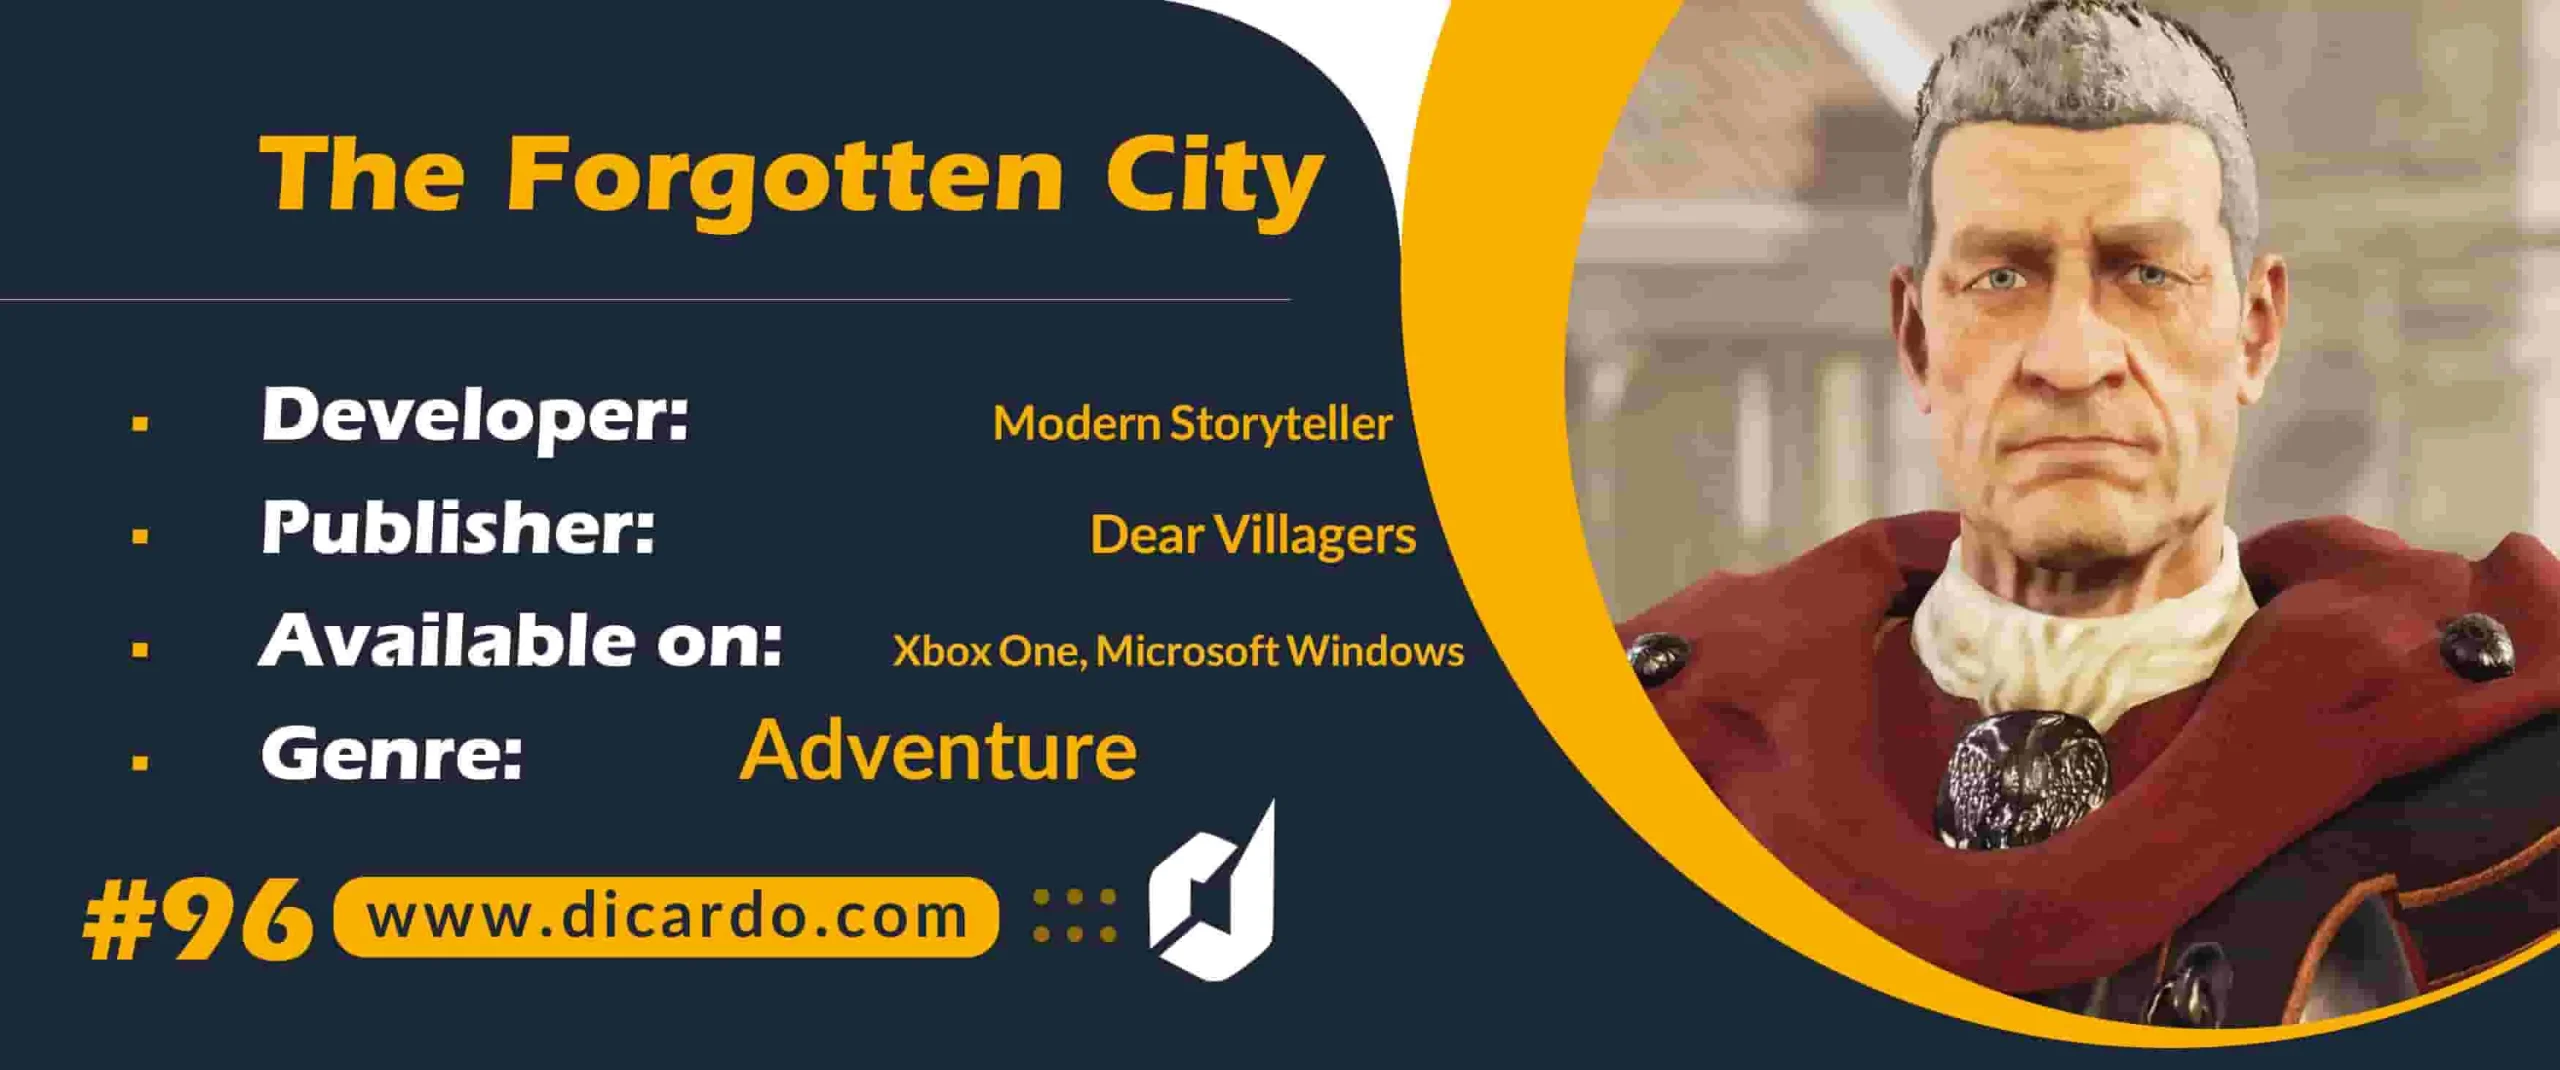 #96 د فورگاتن سیتی The Forgotten City از برترین بازیهای کامپیوتری با ماجراجویی اسرارآمیز